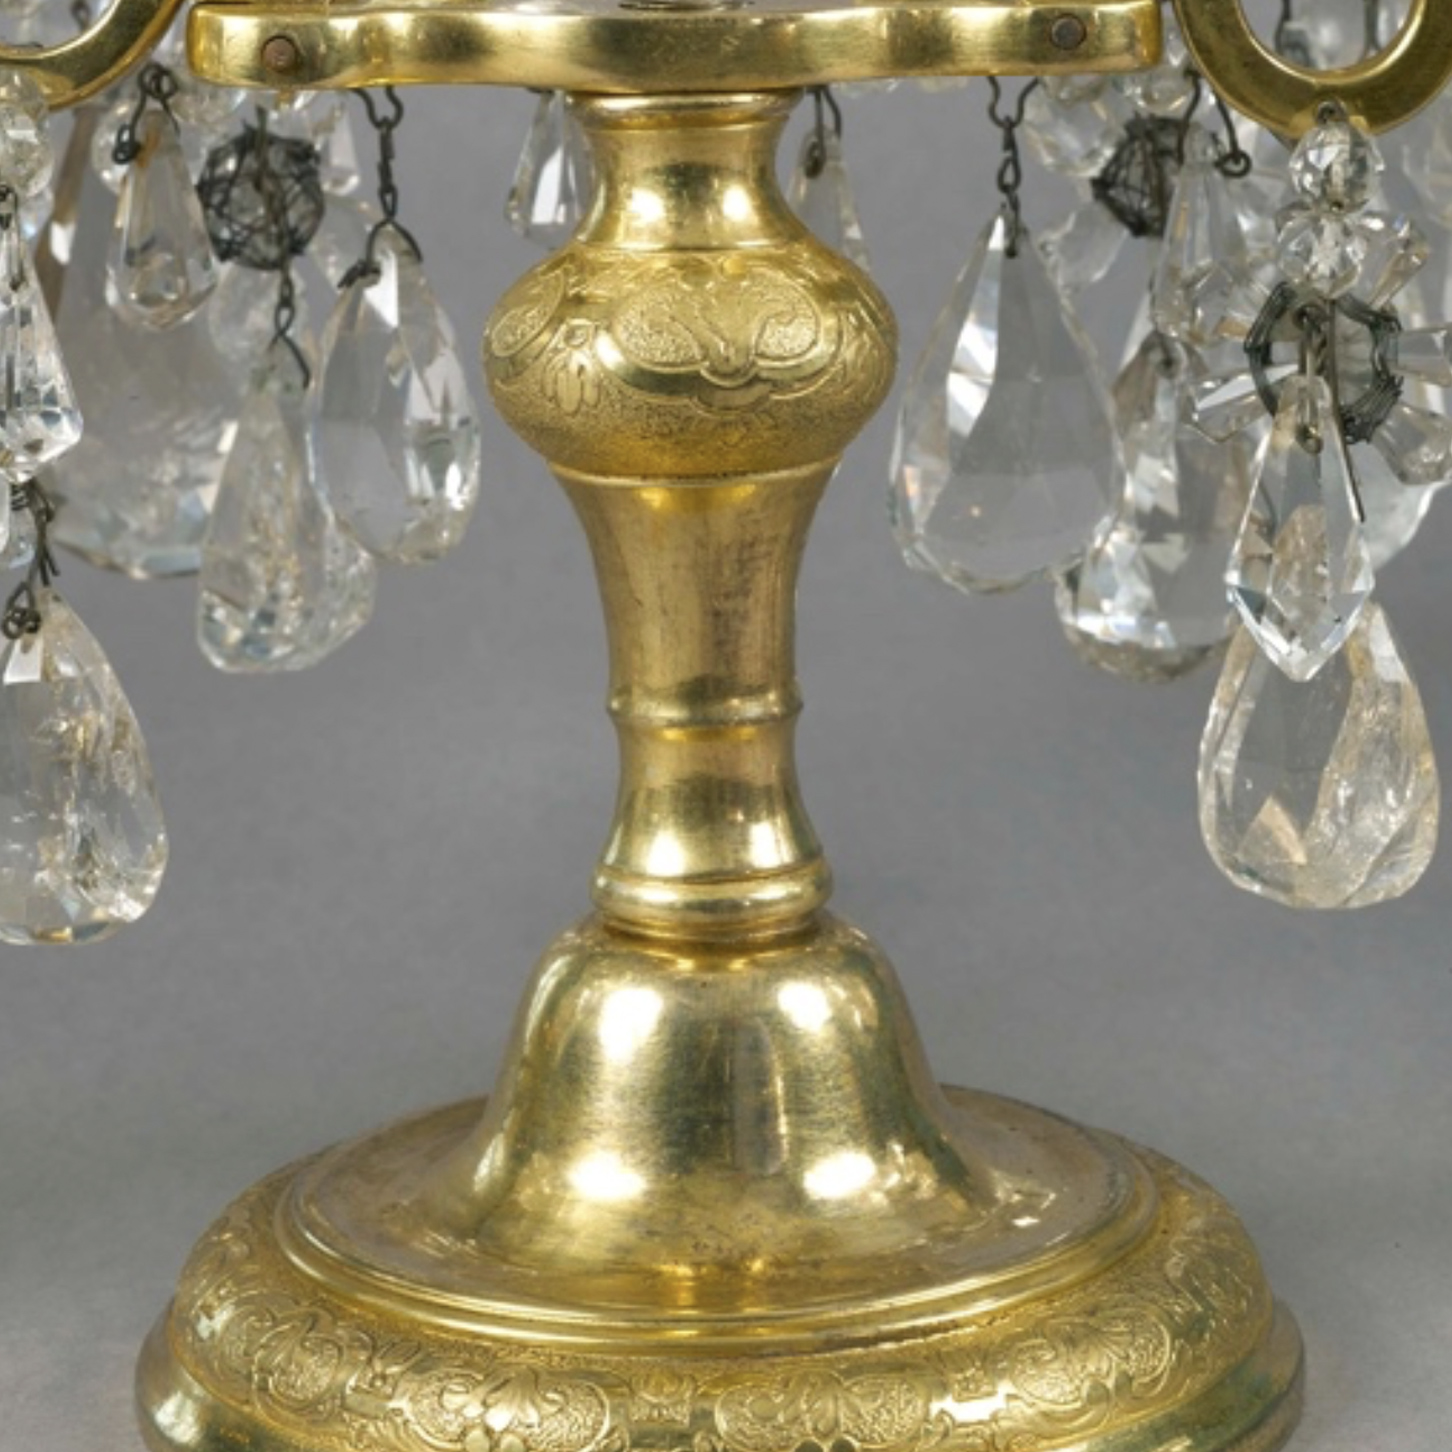 Détail : Paire de girandoles en bronze doré et cristal